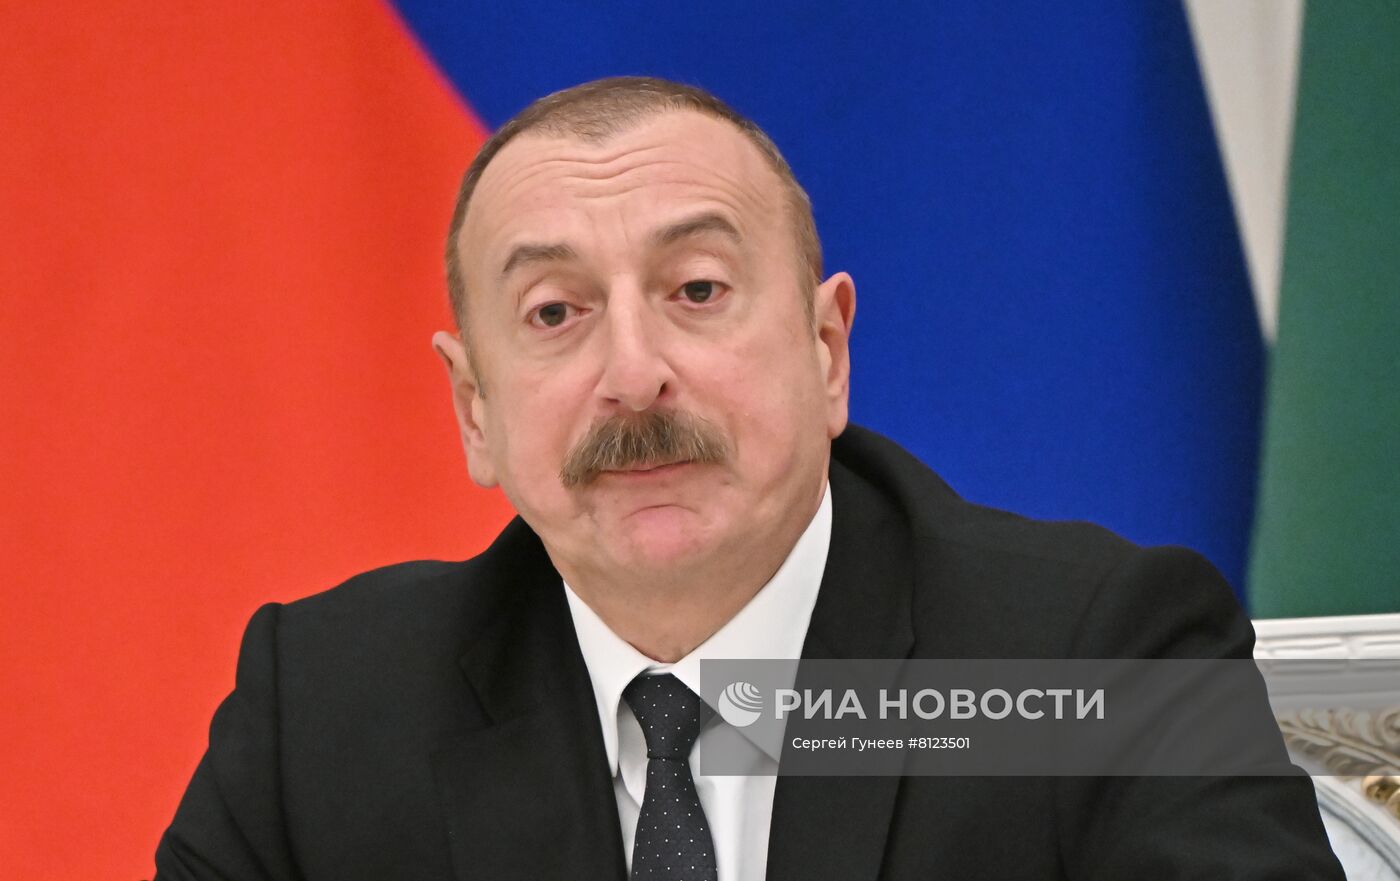 Президент РФ В. Путин провел переговоры с президентом Азербайджана И. Алиевым 